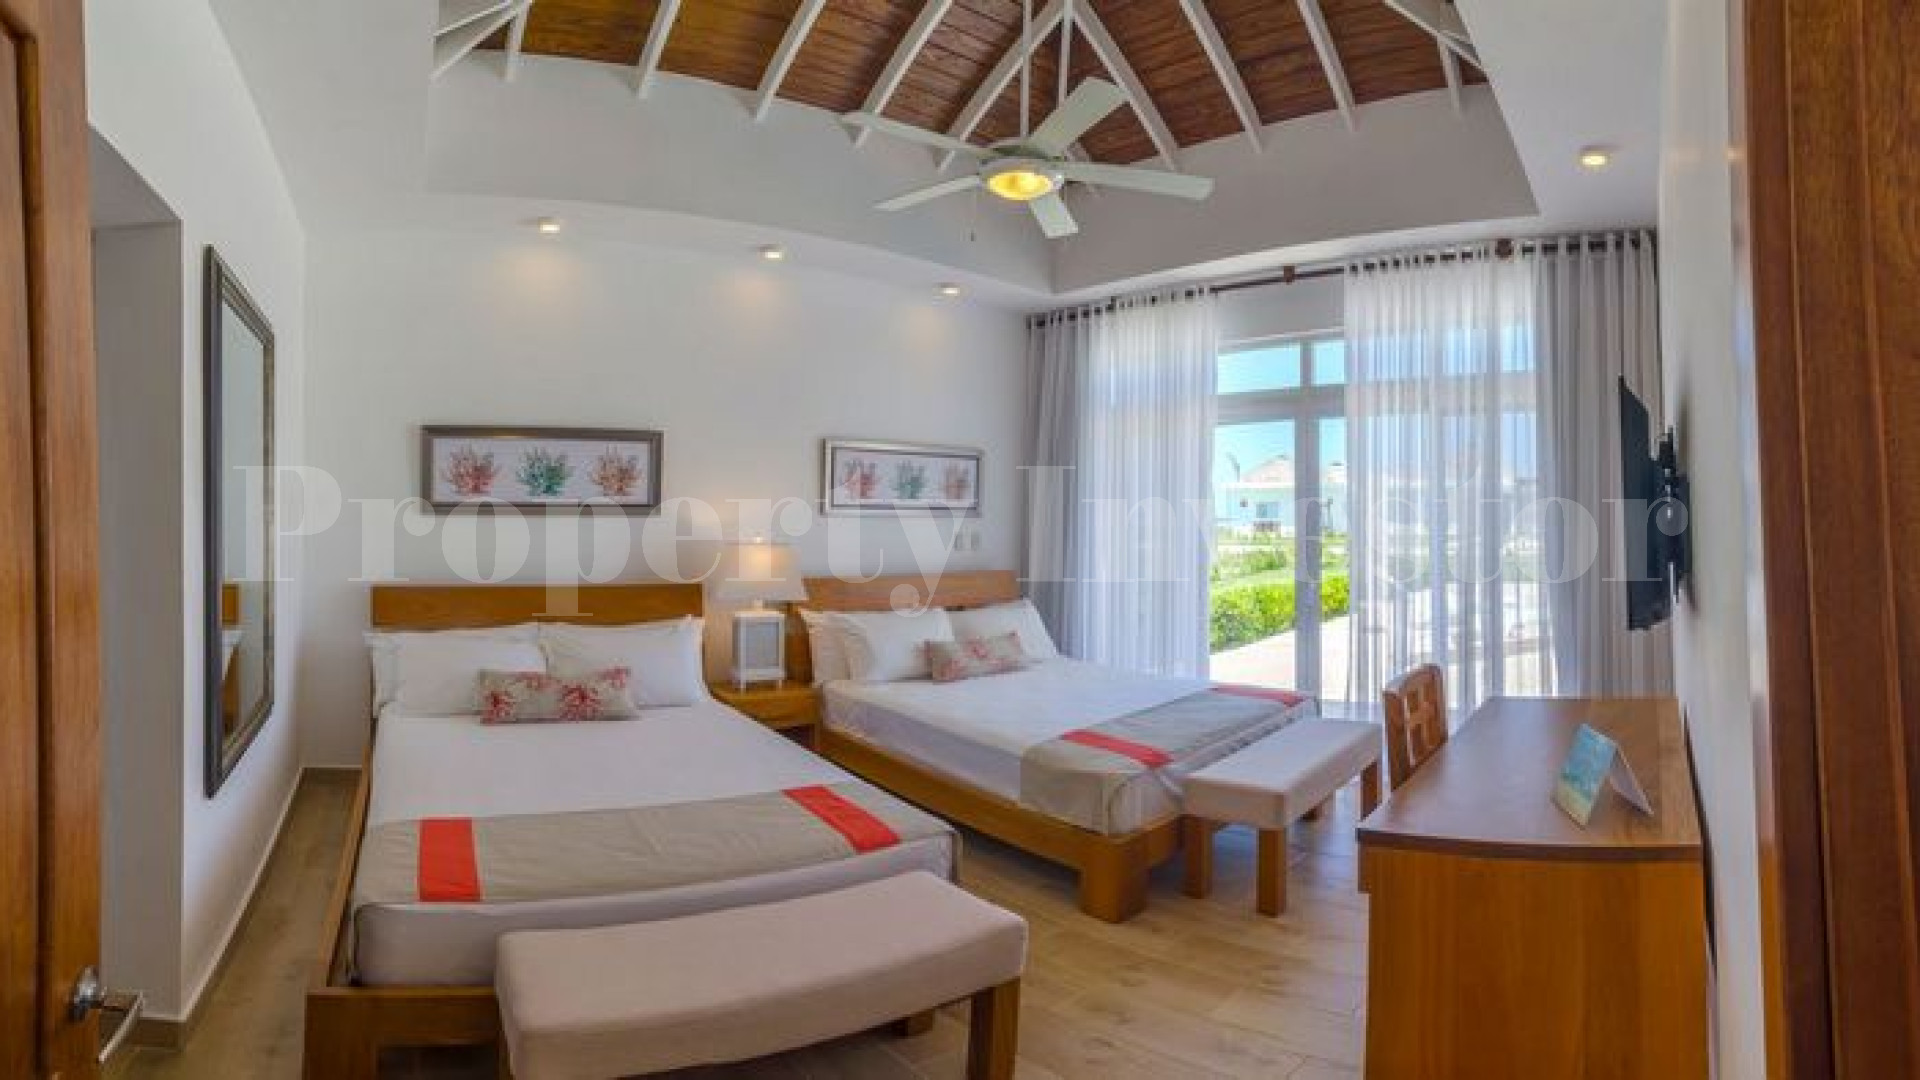 Вилла с 2 спальнями с видом на море в Доминиканской Республике с финансированием на 30 лет (Вилла 18)